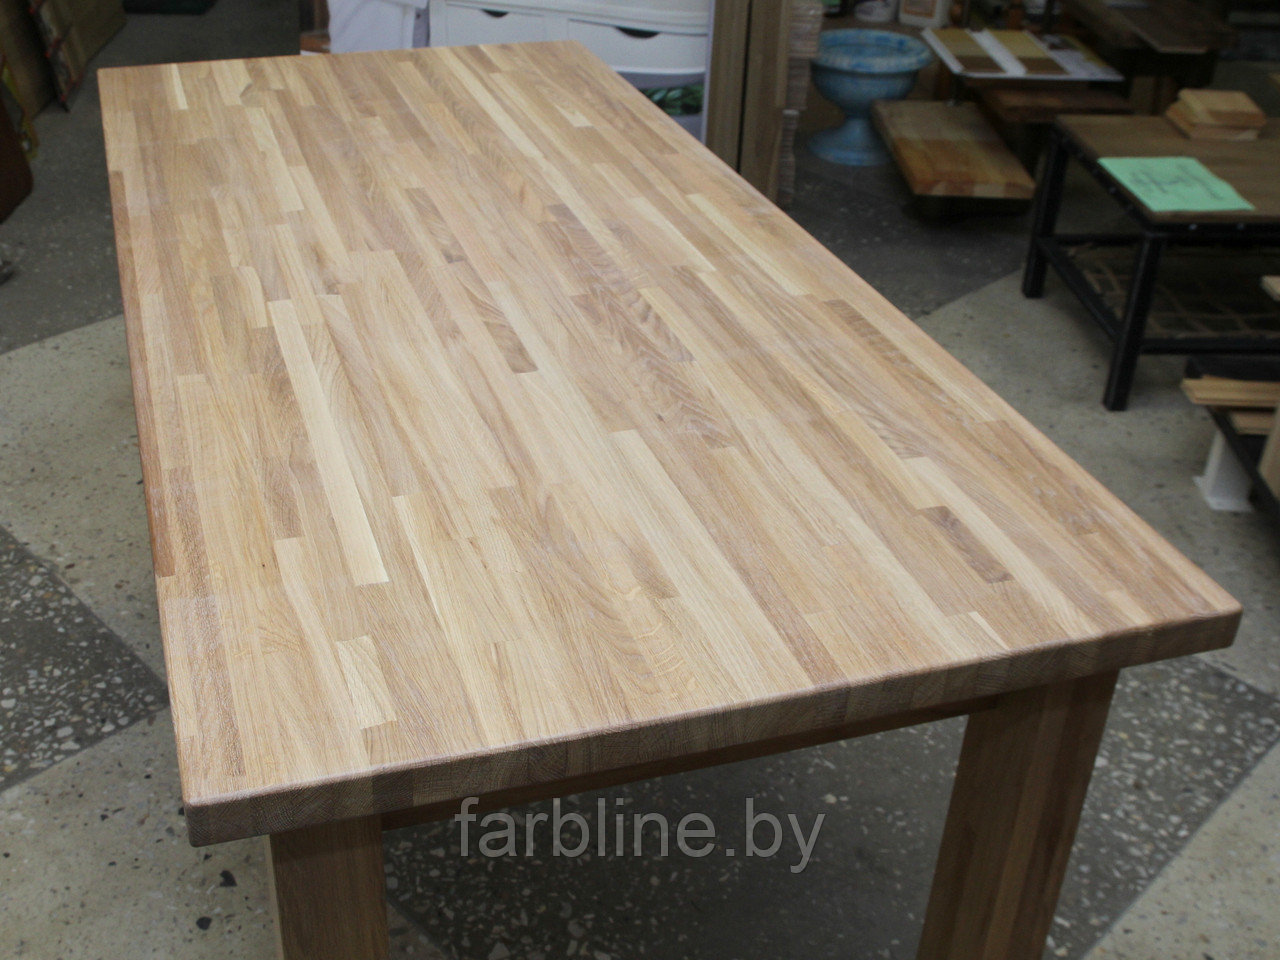 Обеденный стол (массив дуба, размер 1600*750*700, входит в комплект для сборки стола), фото 1